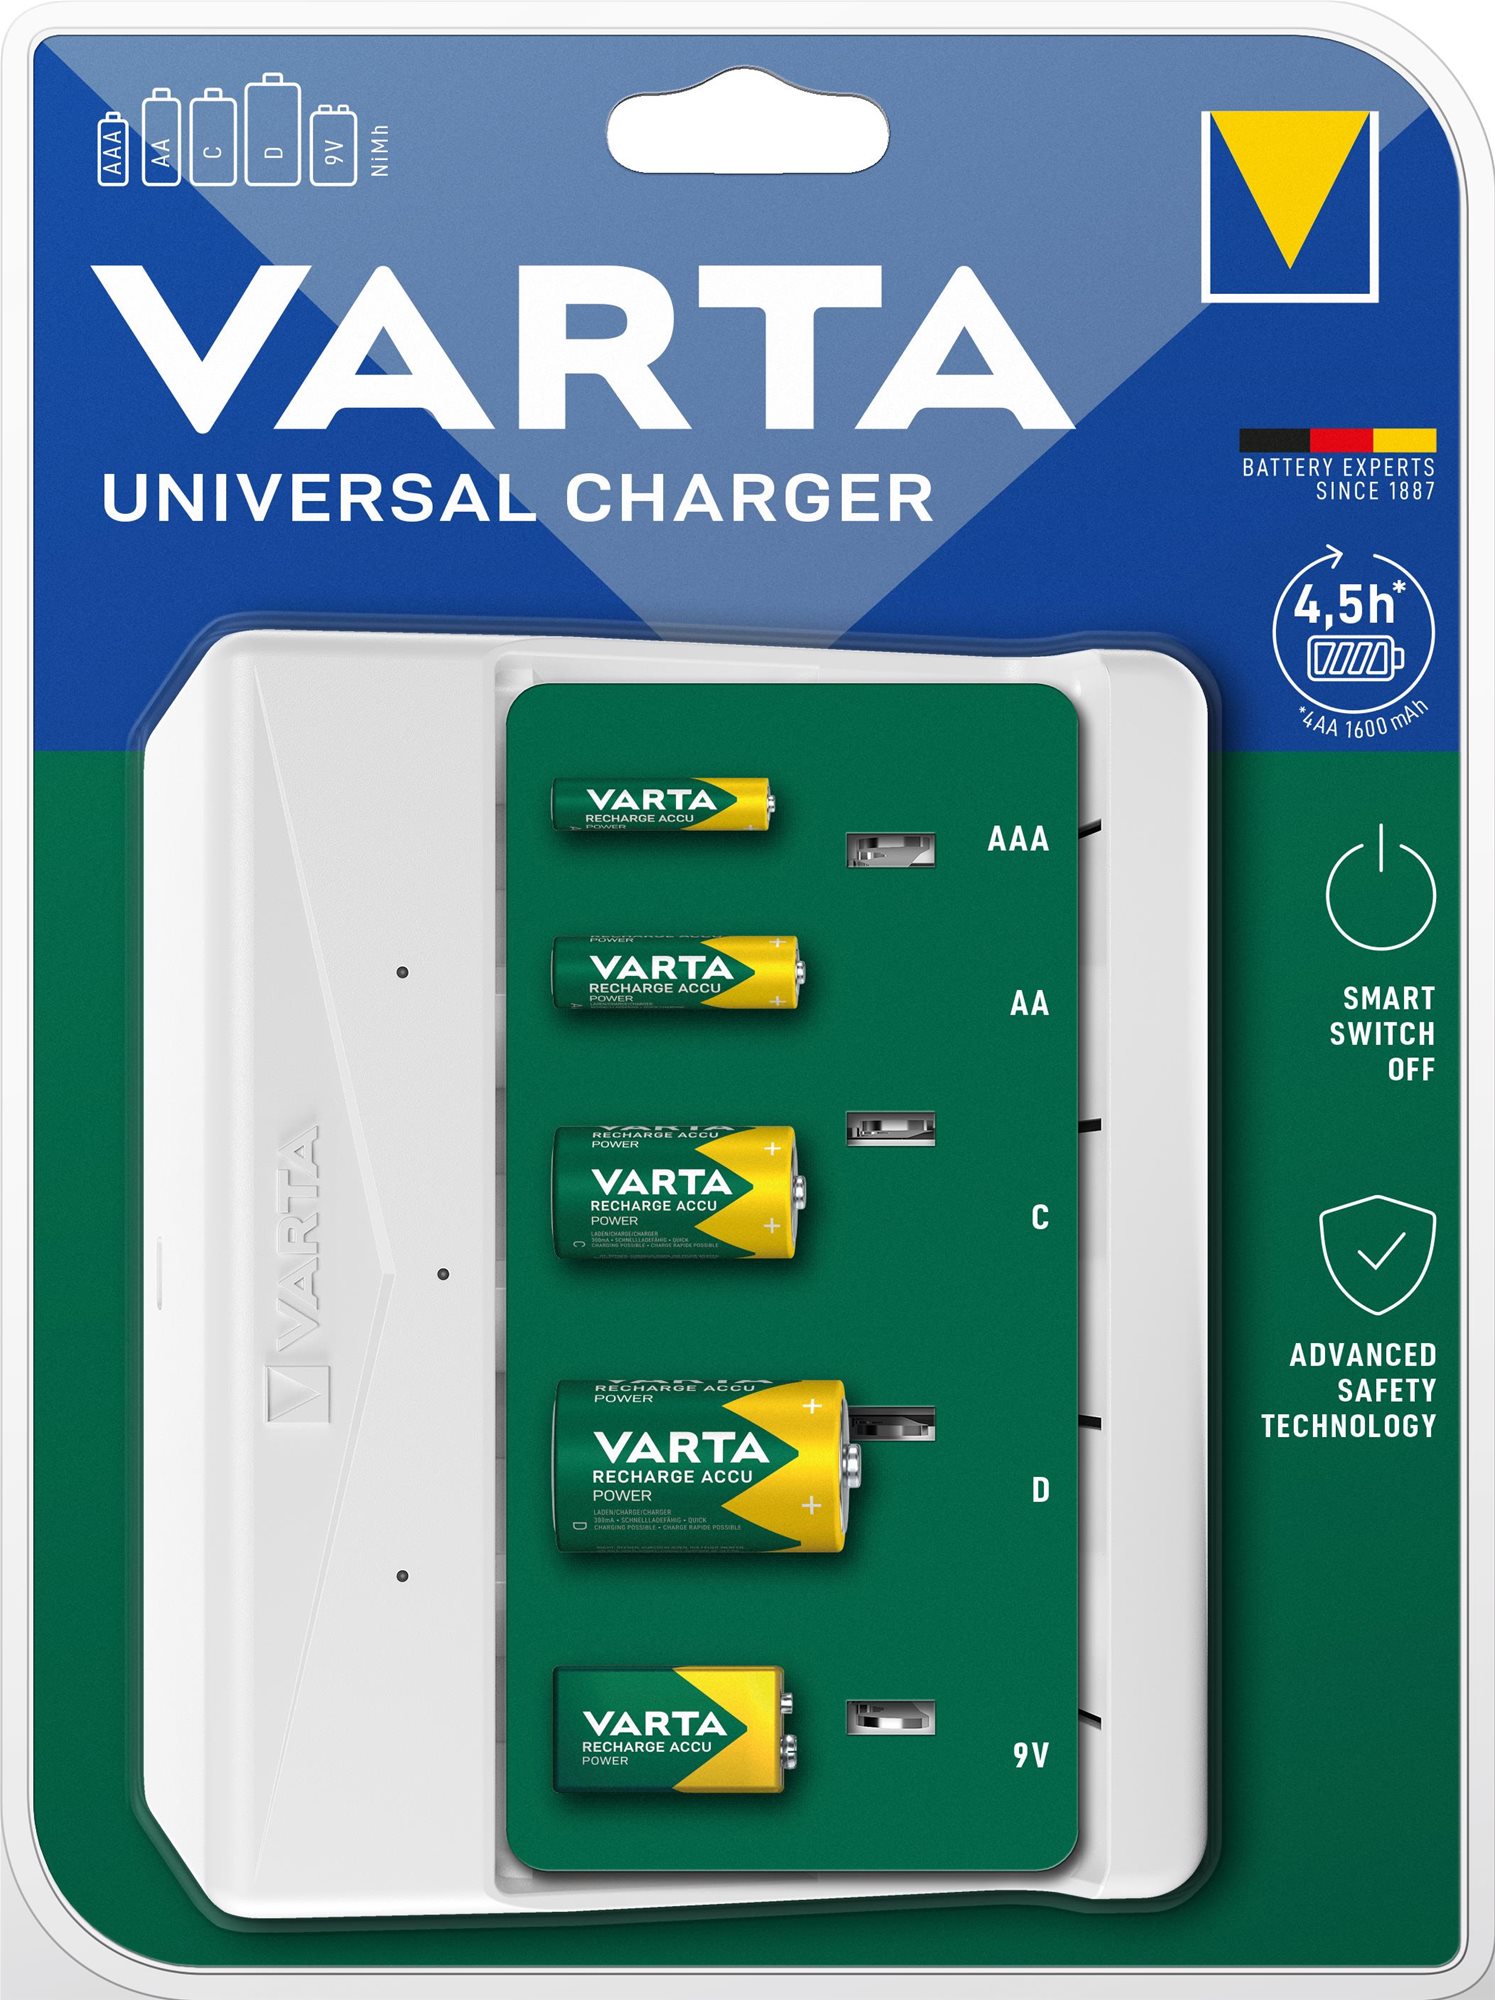 VARTA Universal Charger empty töltő